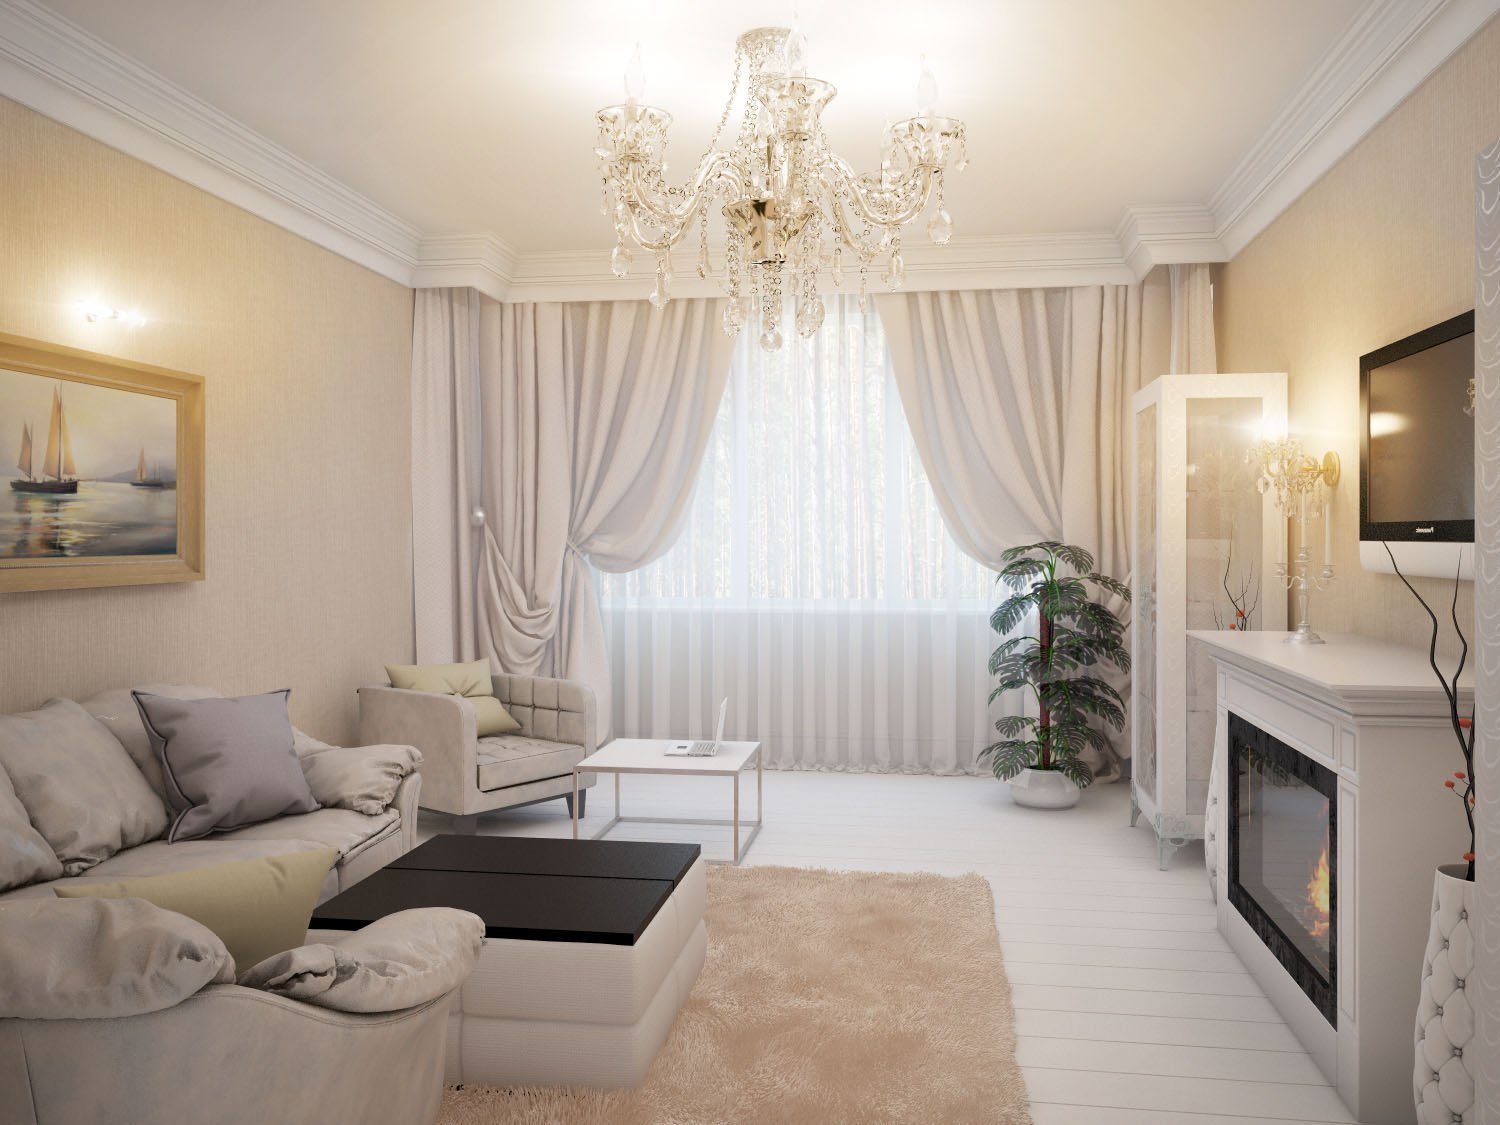 Гостиная в квартире: самые простые идеи и модные варианты оформления интерьера разных по размеру гостиных (150 фото)